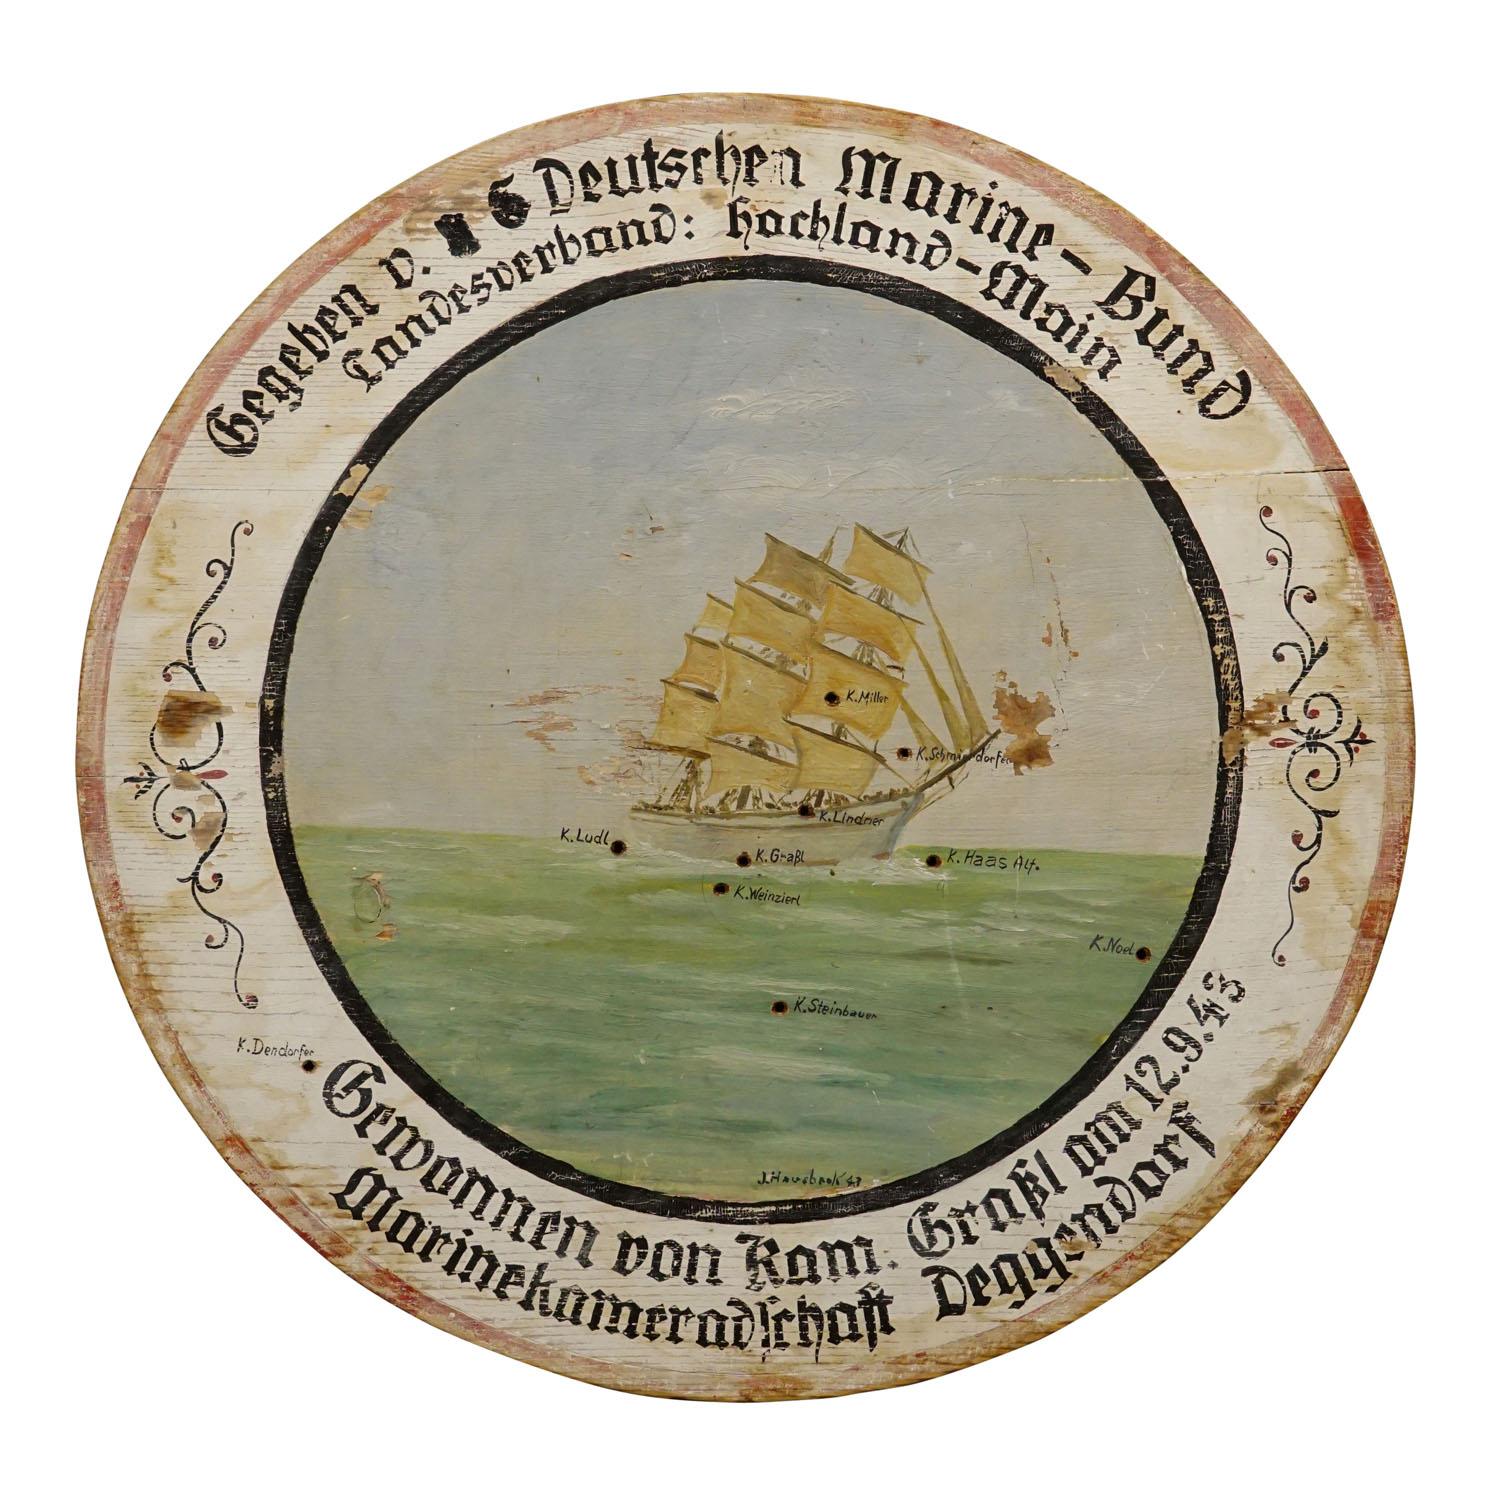 Plaque de cible de chasse de la Ligue allemande de la marine avec navire à voile 1943

Plaque de tir antique en bois avec illustration peinte à la main d'un voilier. Avec les inscriptions manuscrites 